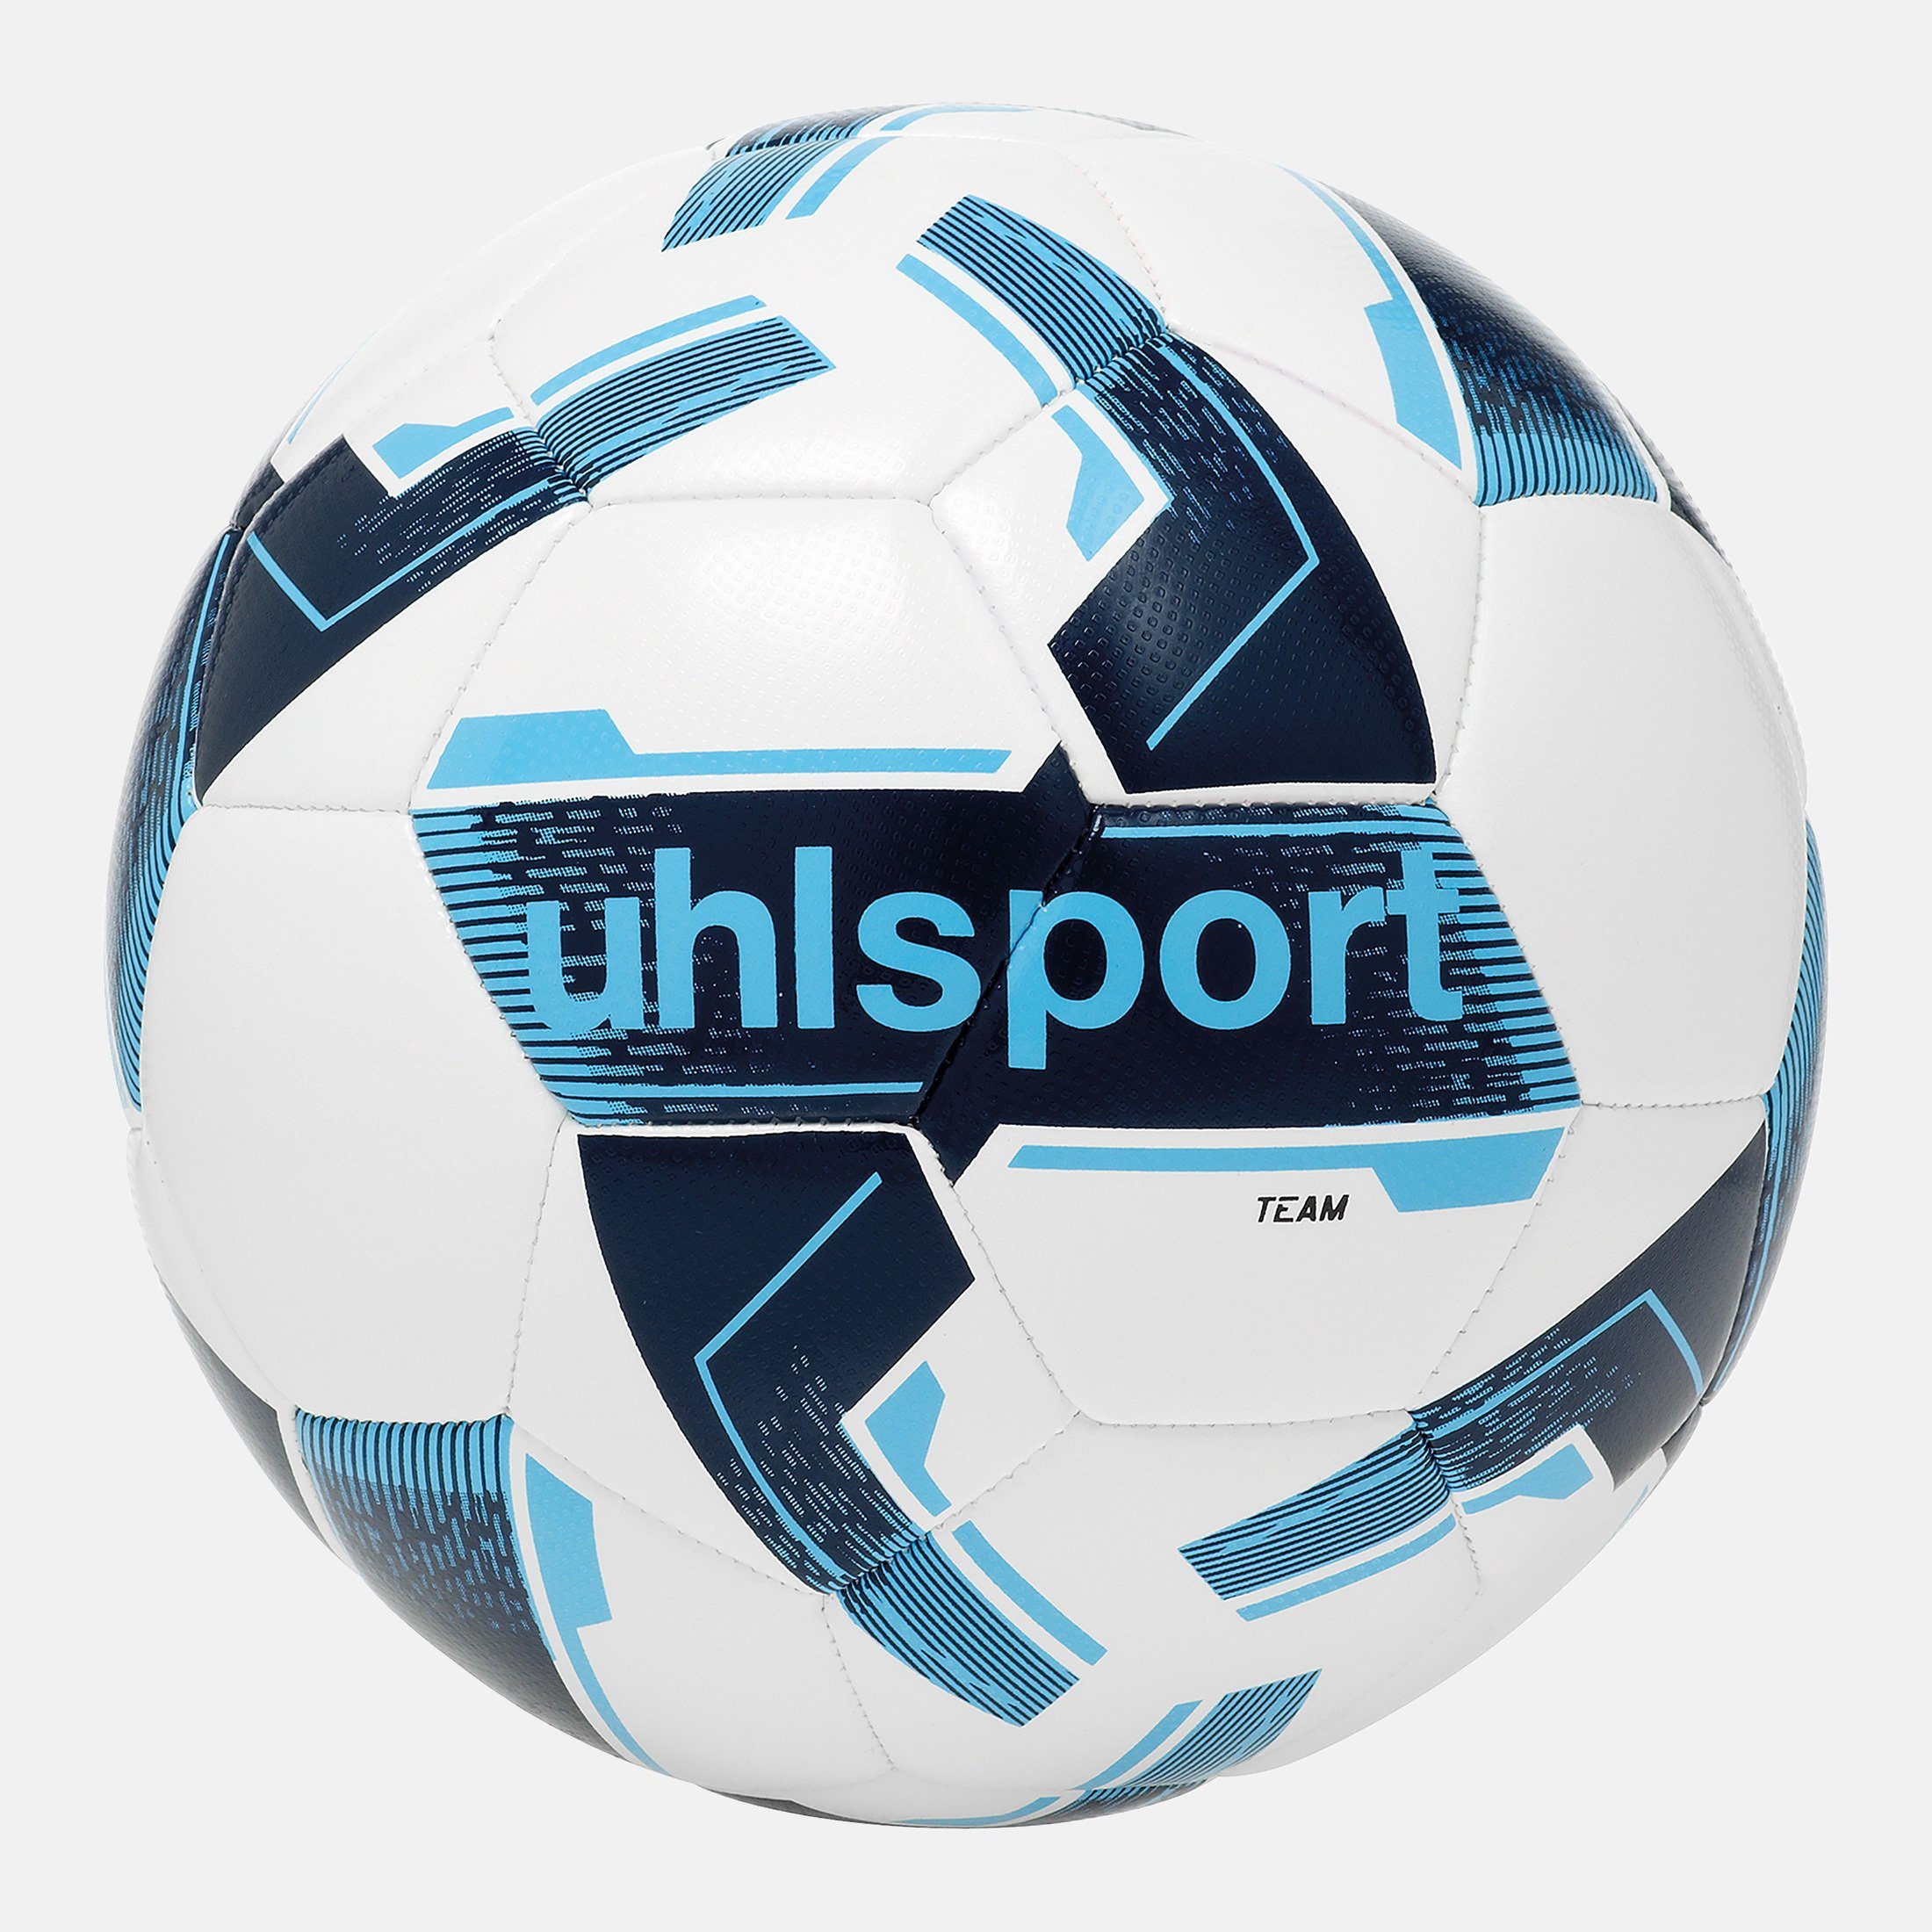 uhlsport Fußball uhlsport Fußball TEAM weiß/marine/eisblau